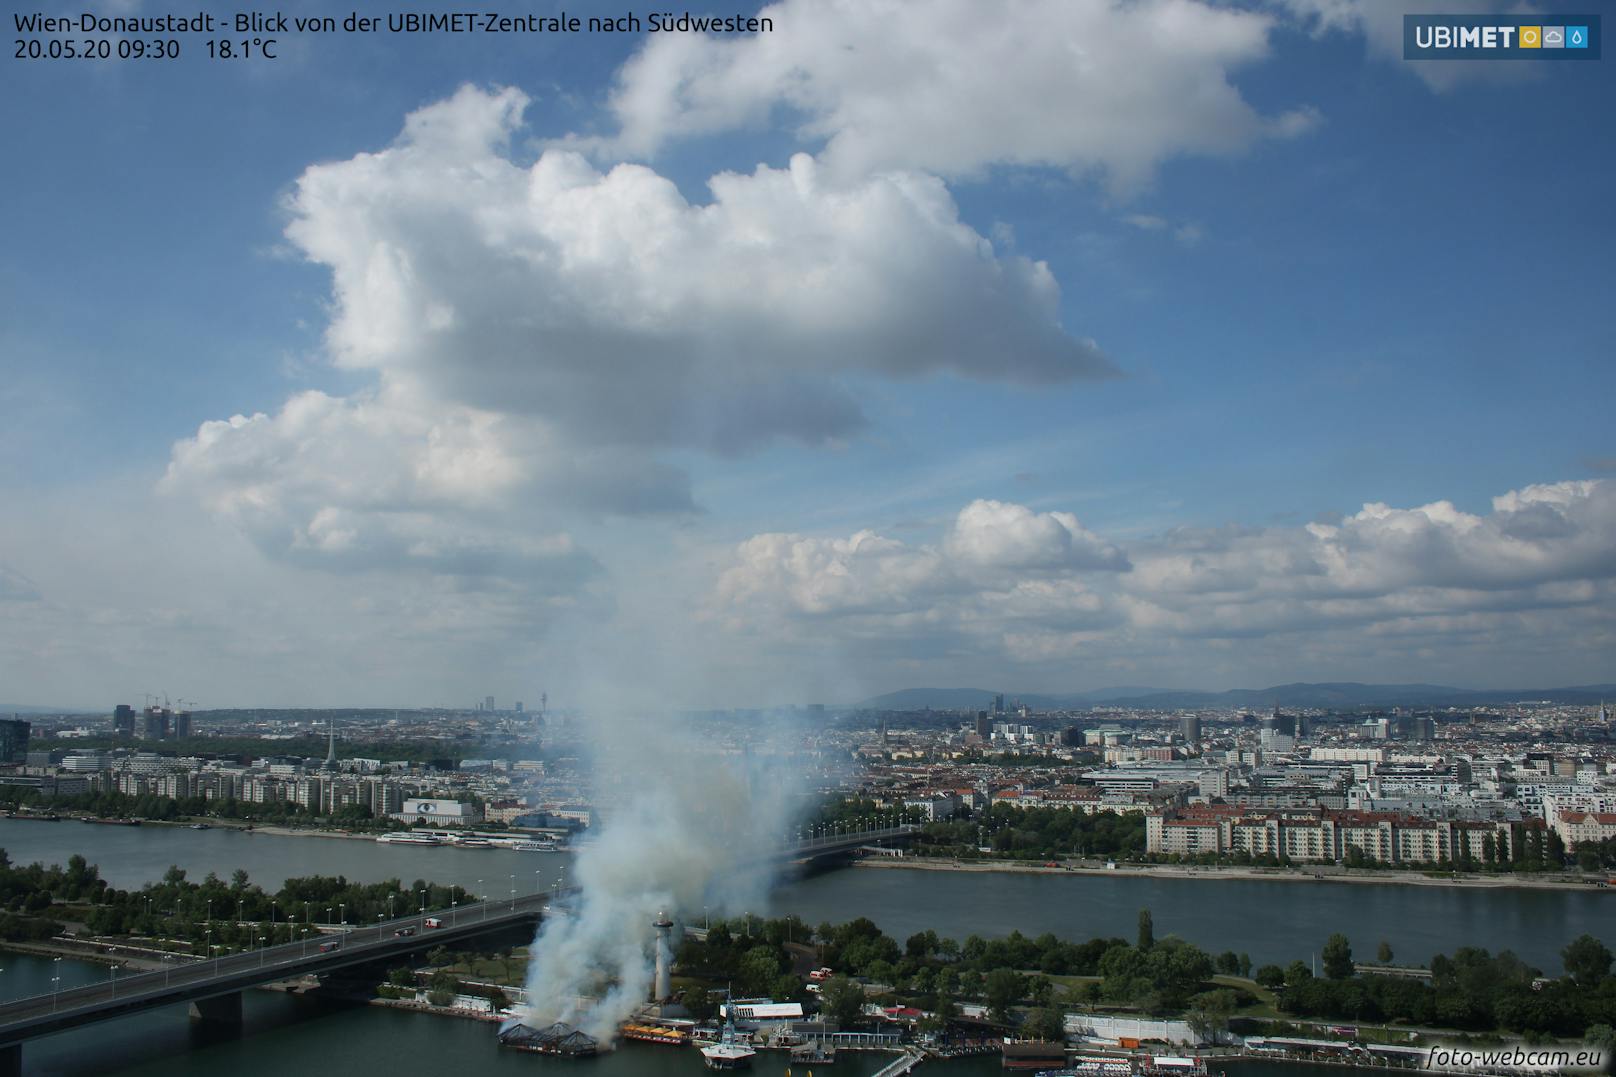 Eine Webcam der UBIMET zeigt deutlich, wann der Brand ausbrach.